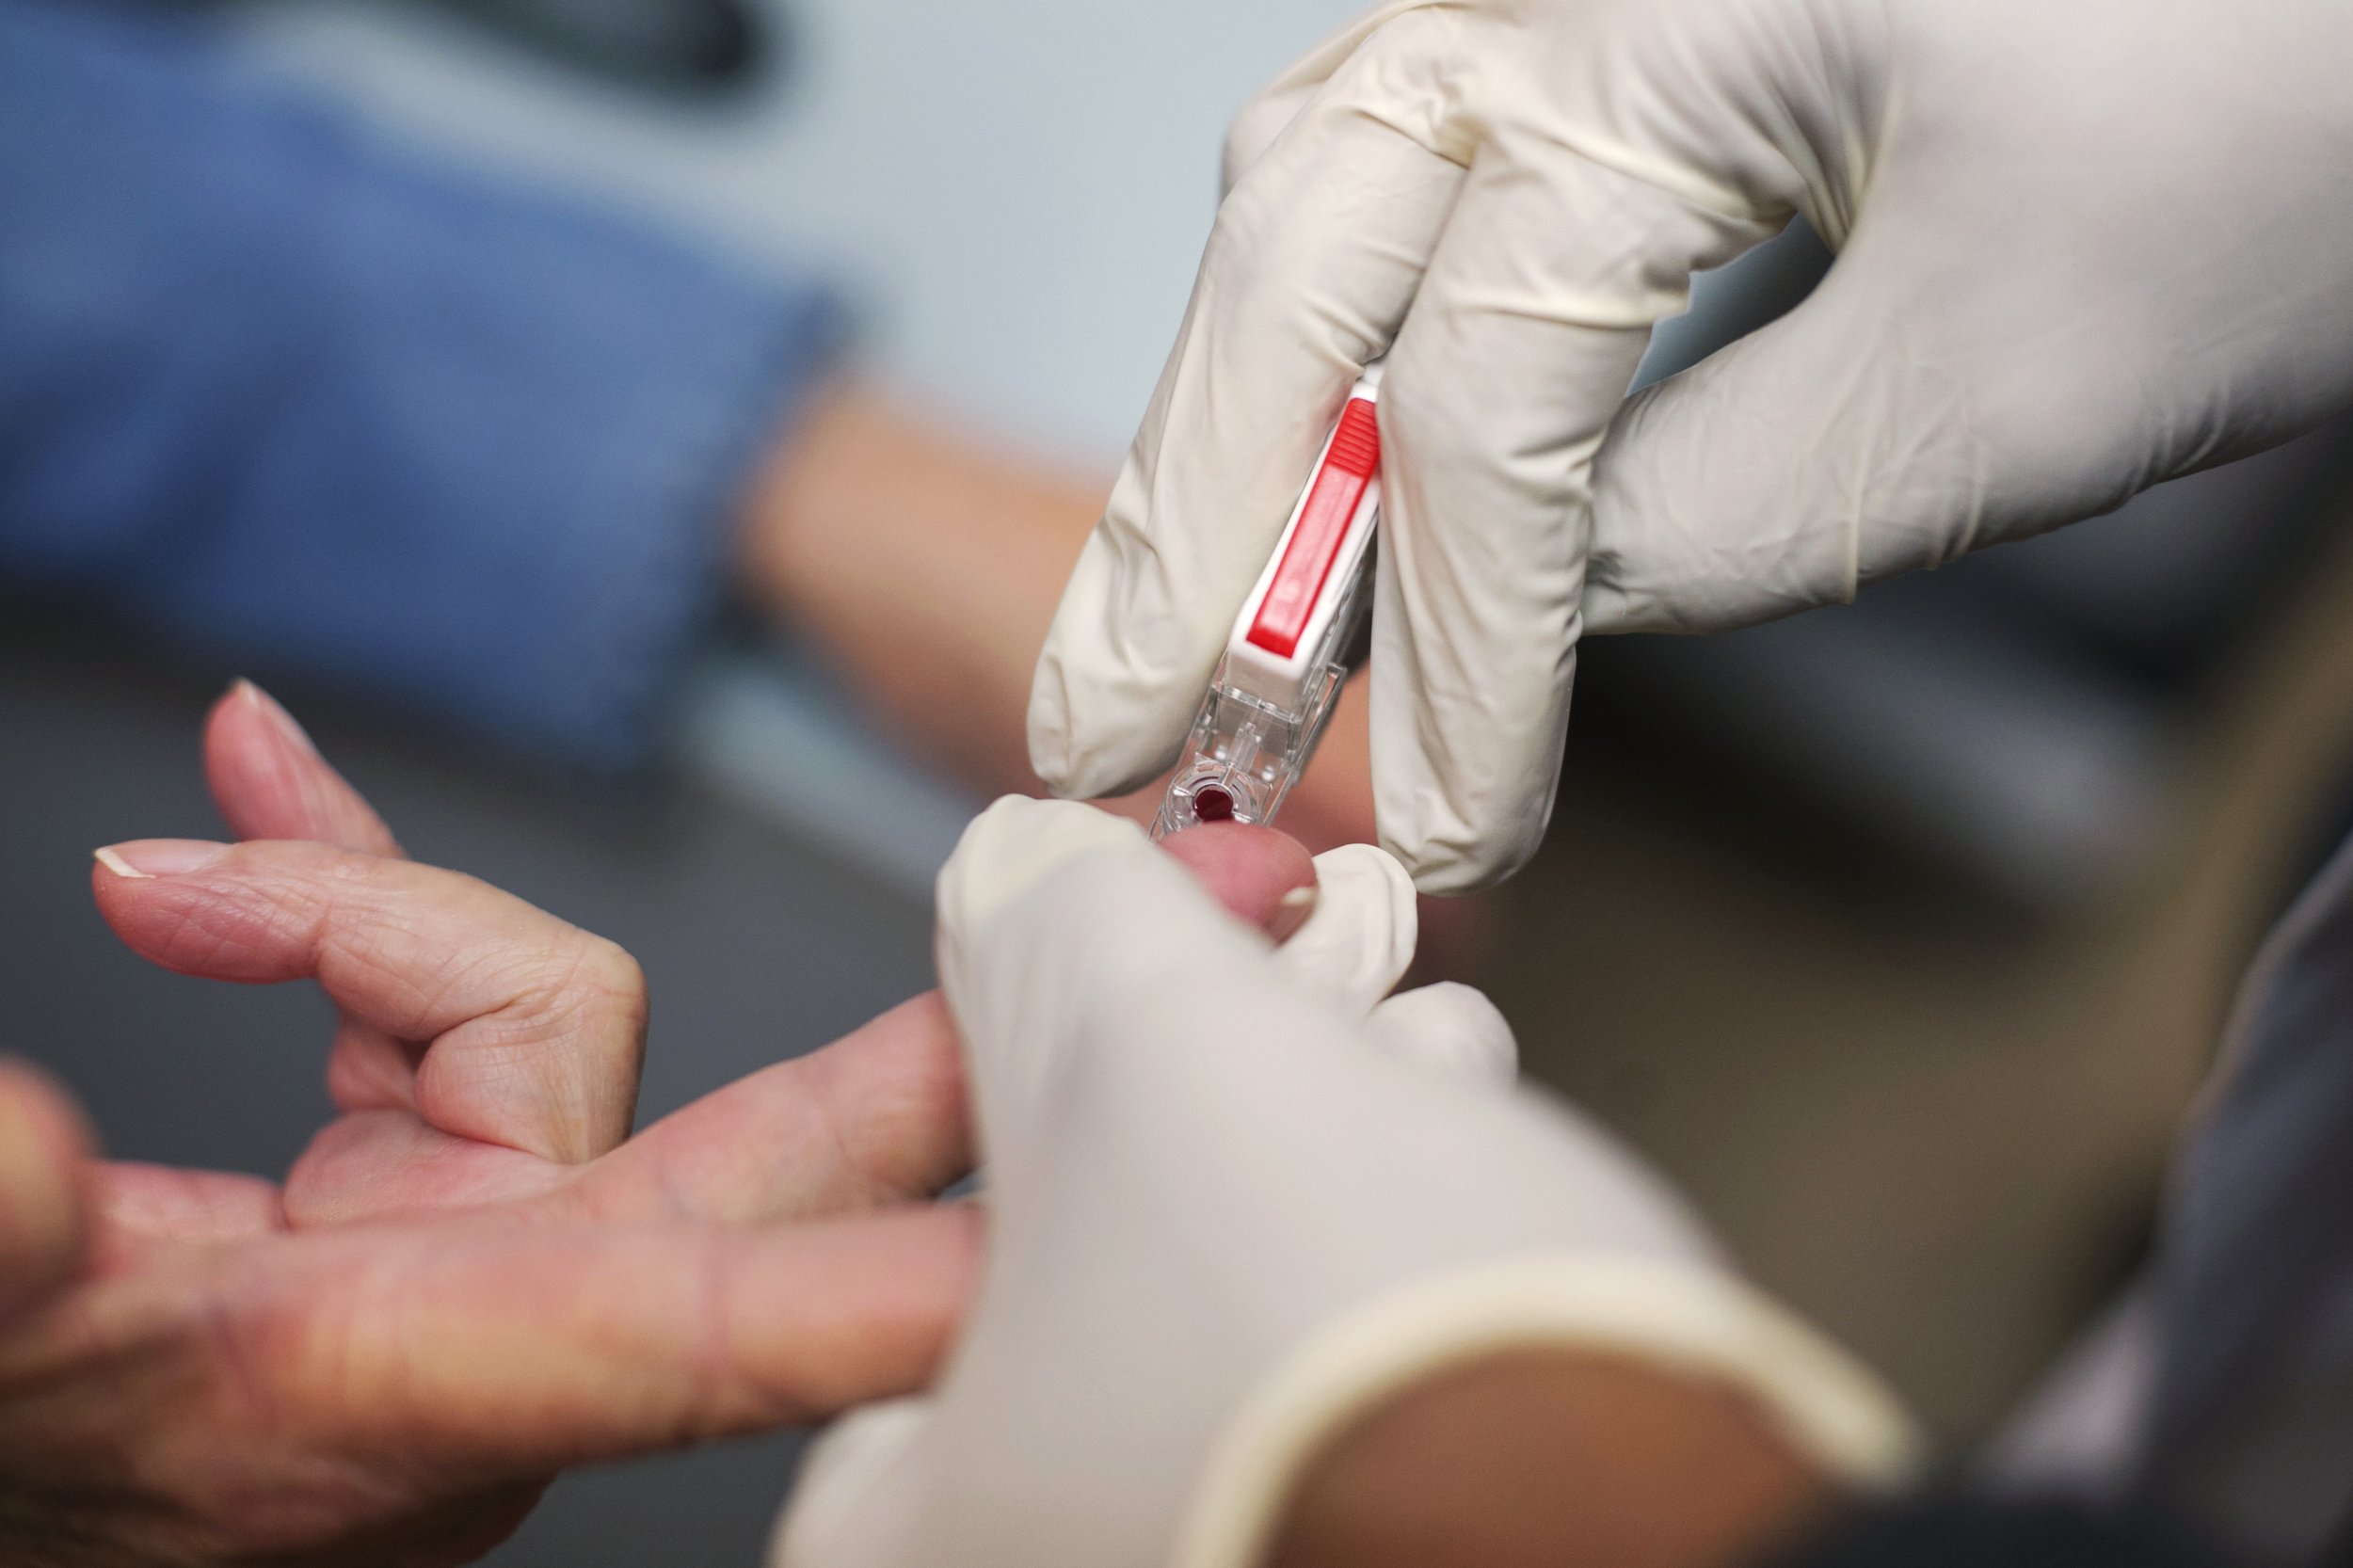 Признак инфицирования крови во флаконе тест